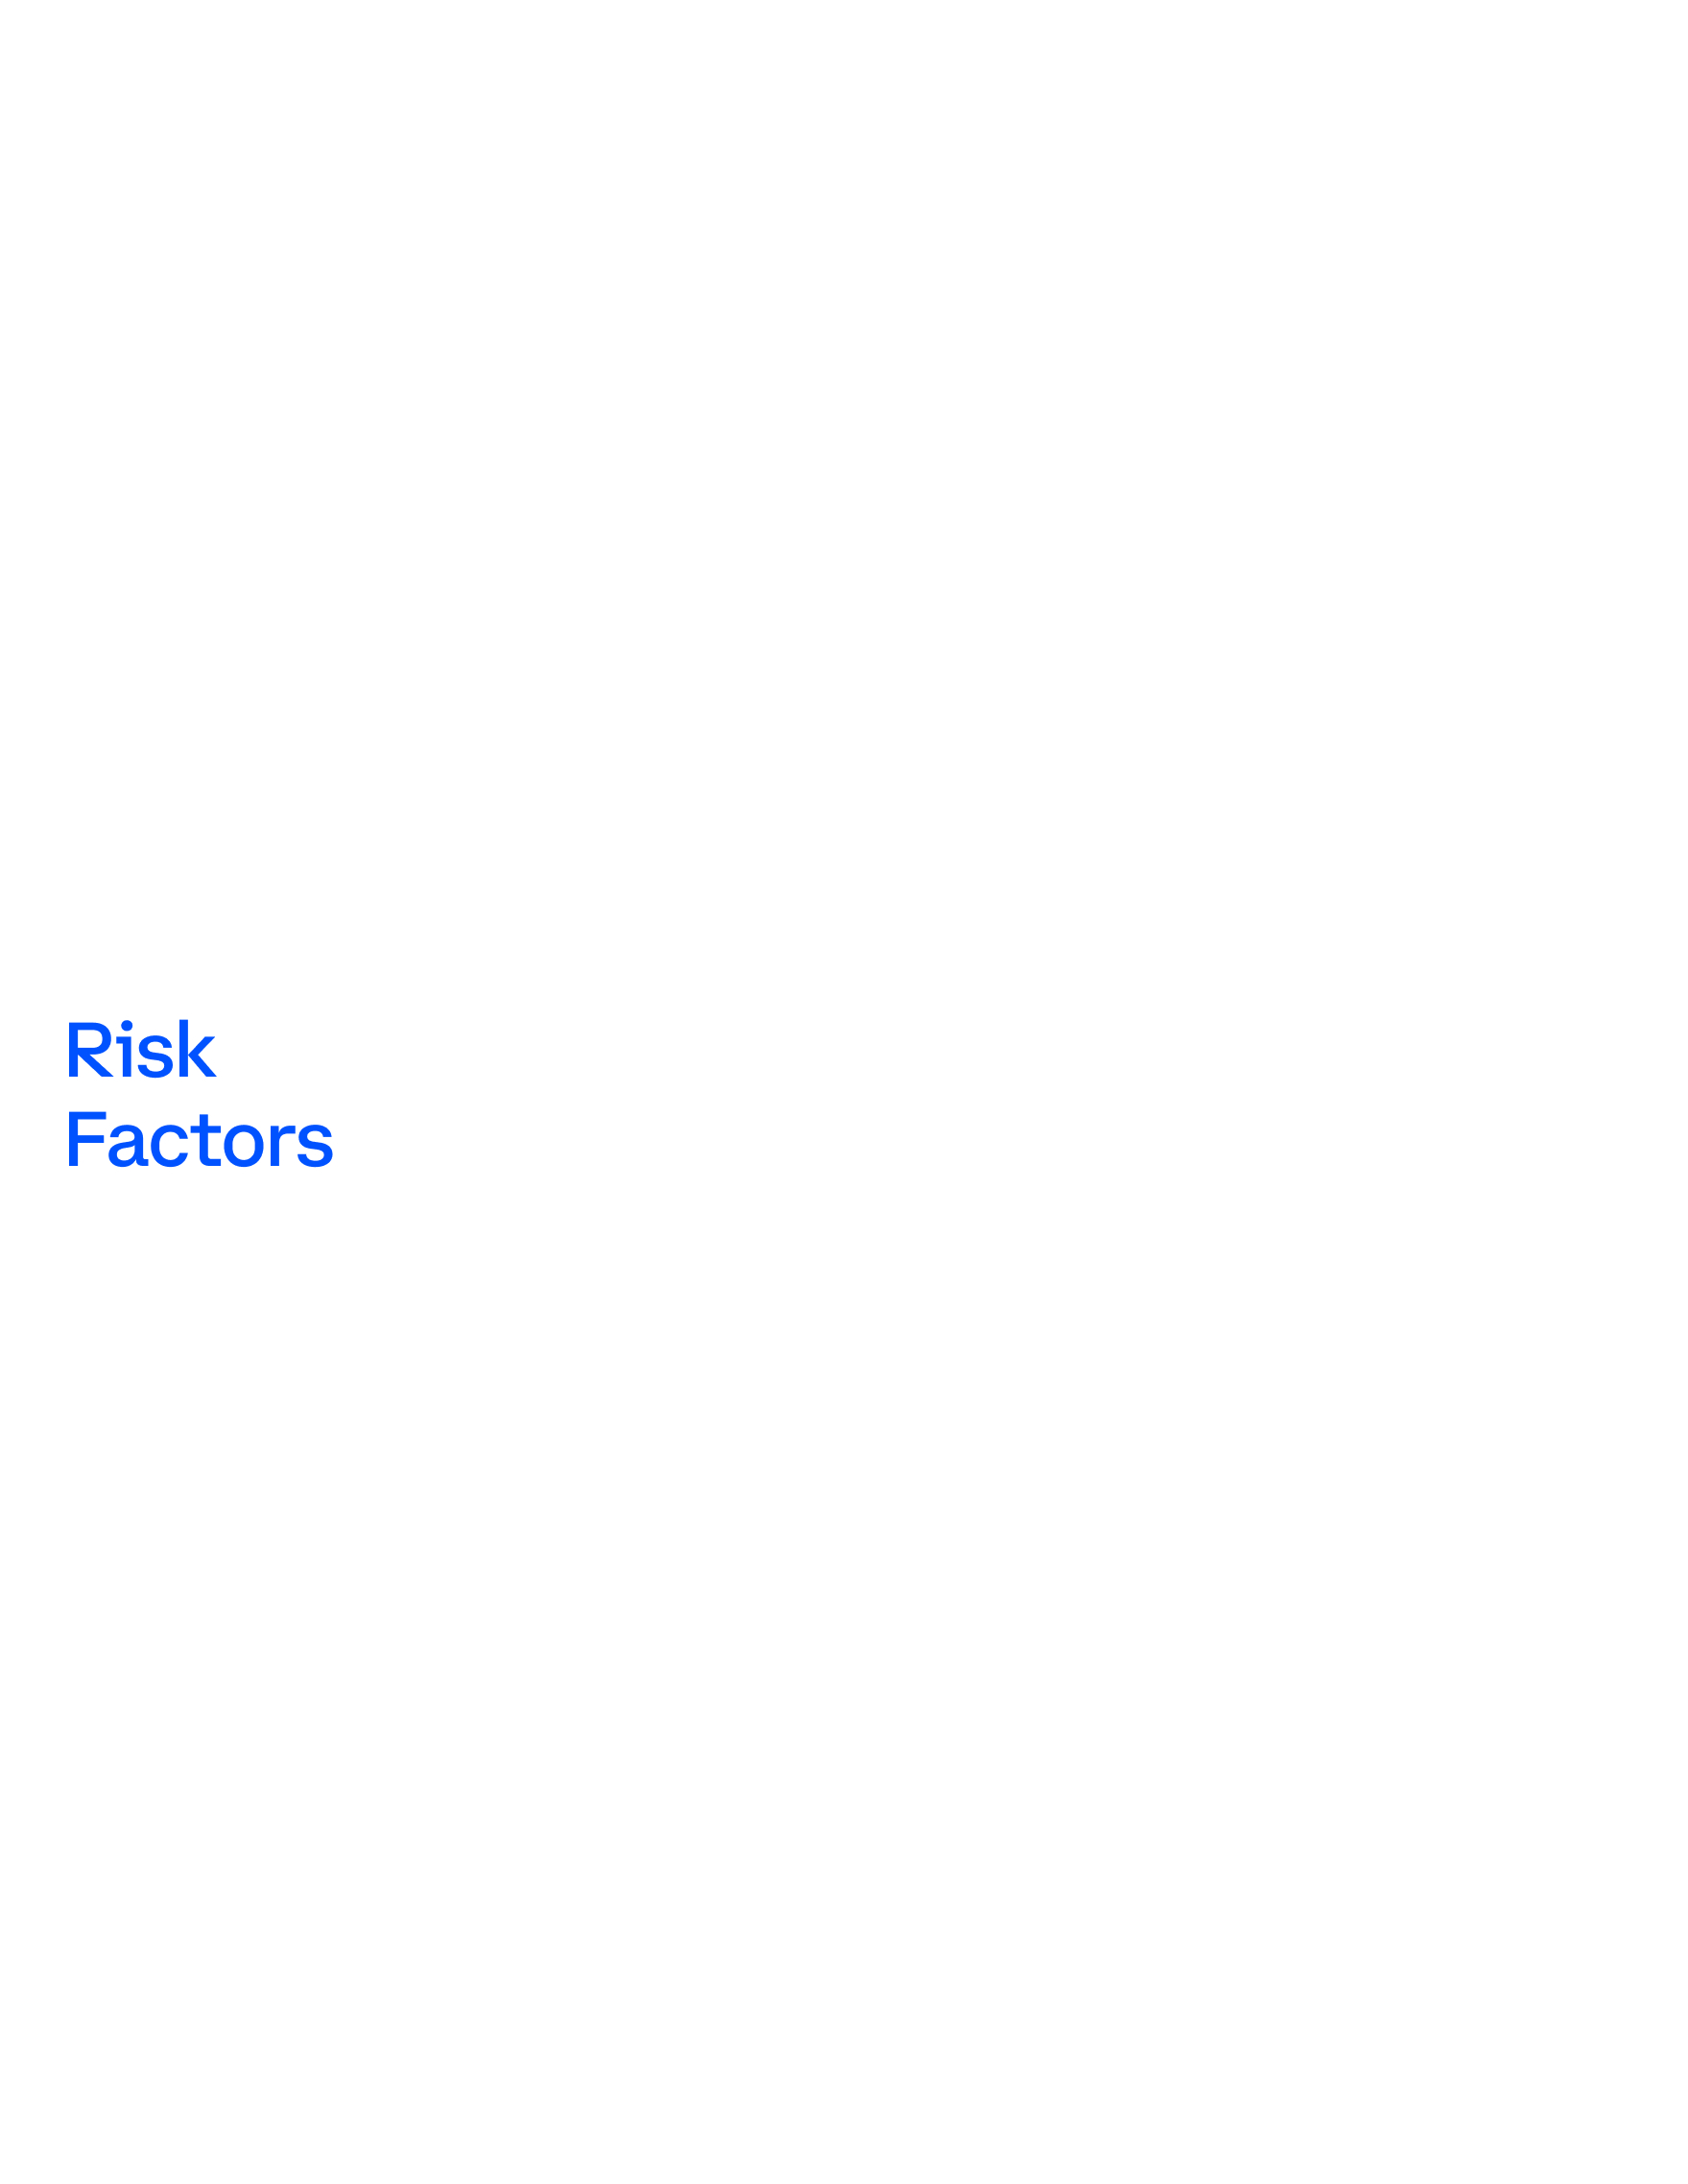 riskfactors1a1.jpg